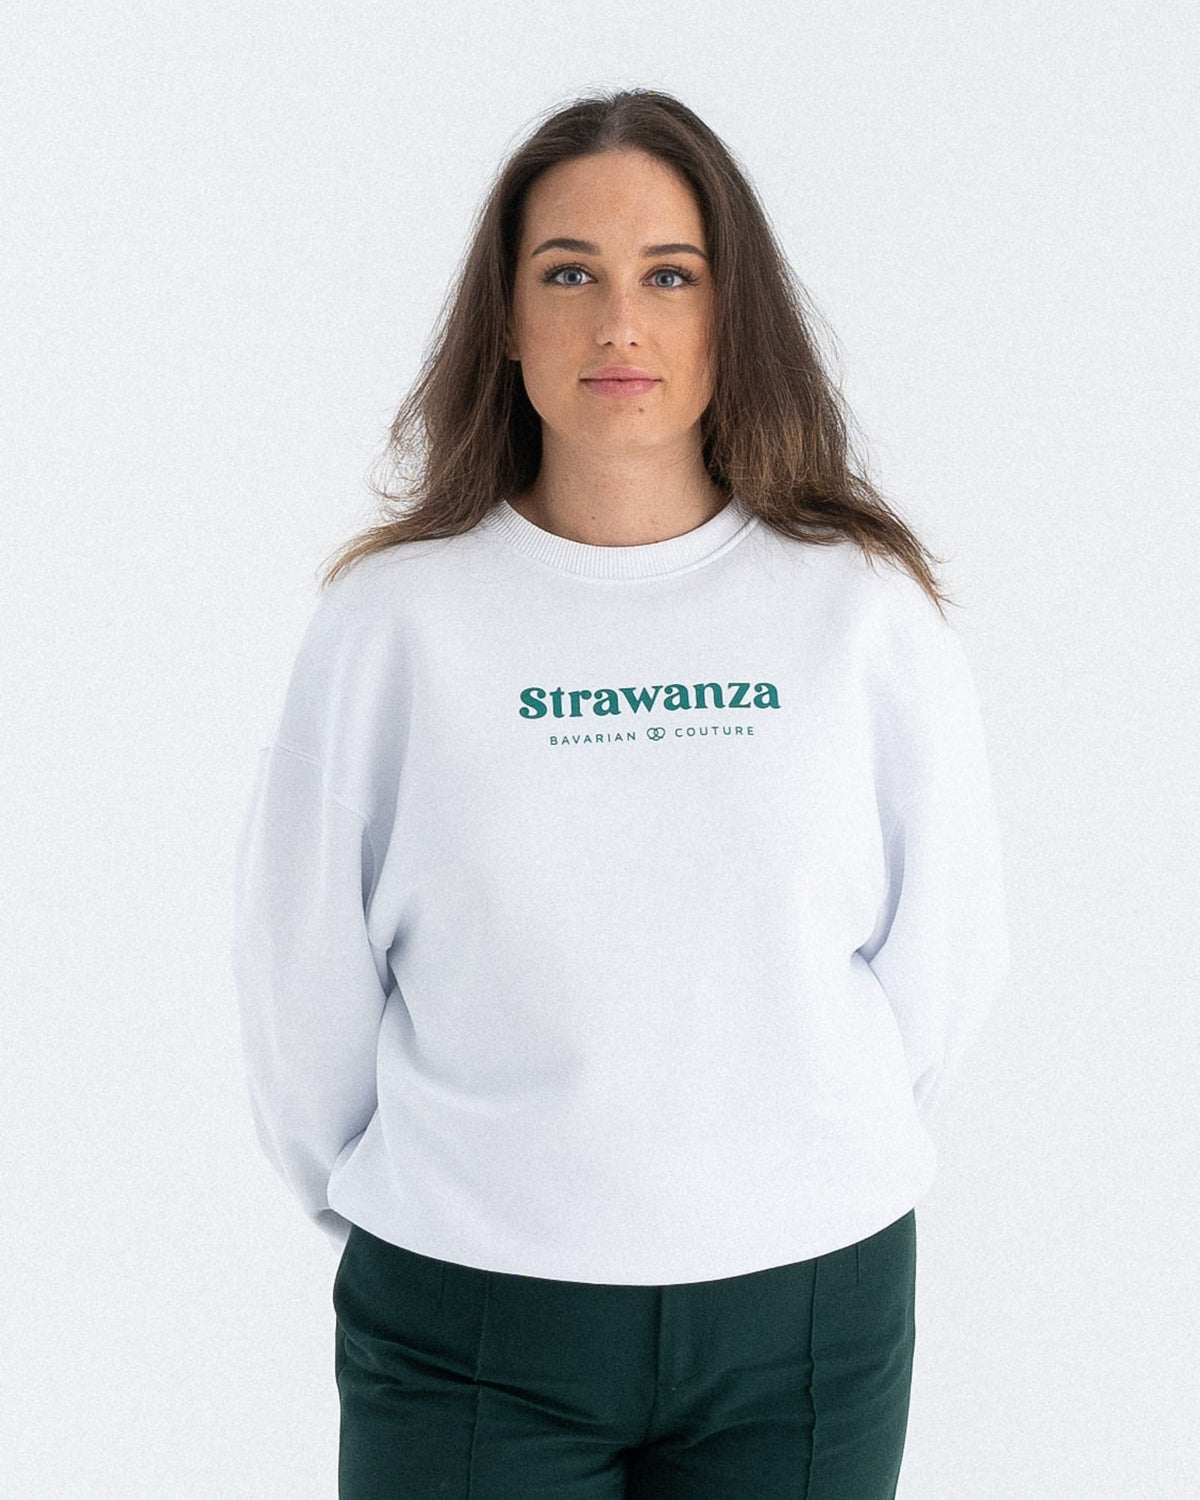 Ein weibliches Model trägt einen weißen Sweater mit einem grünen "Strawanza" und "BAVARIAN COUTURE" Schriftzug auf der Brust.